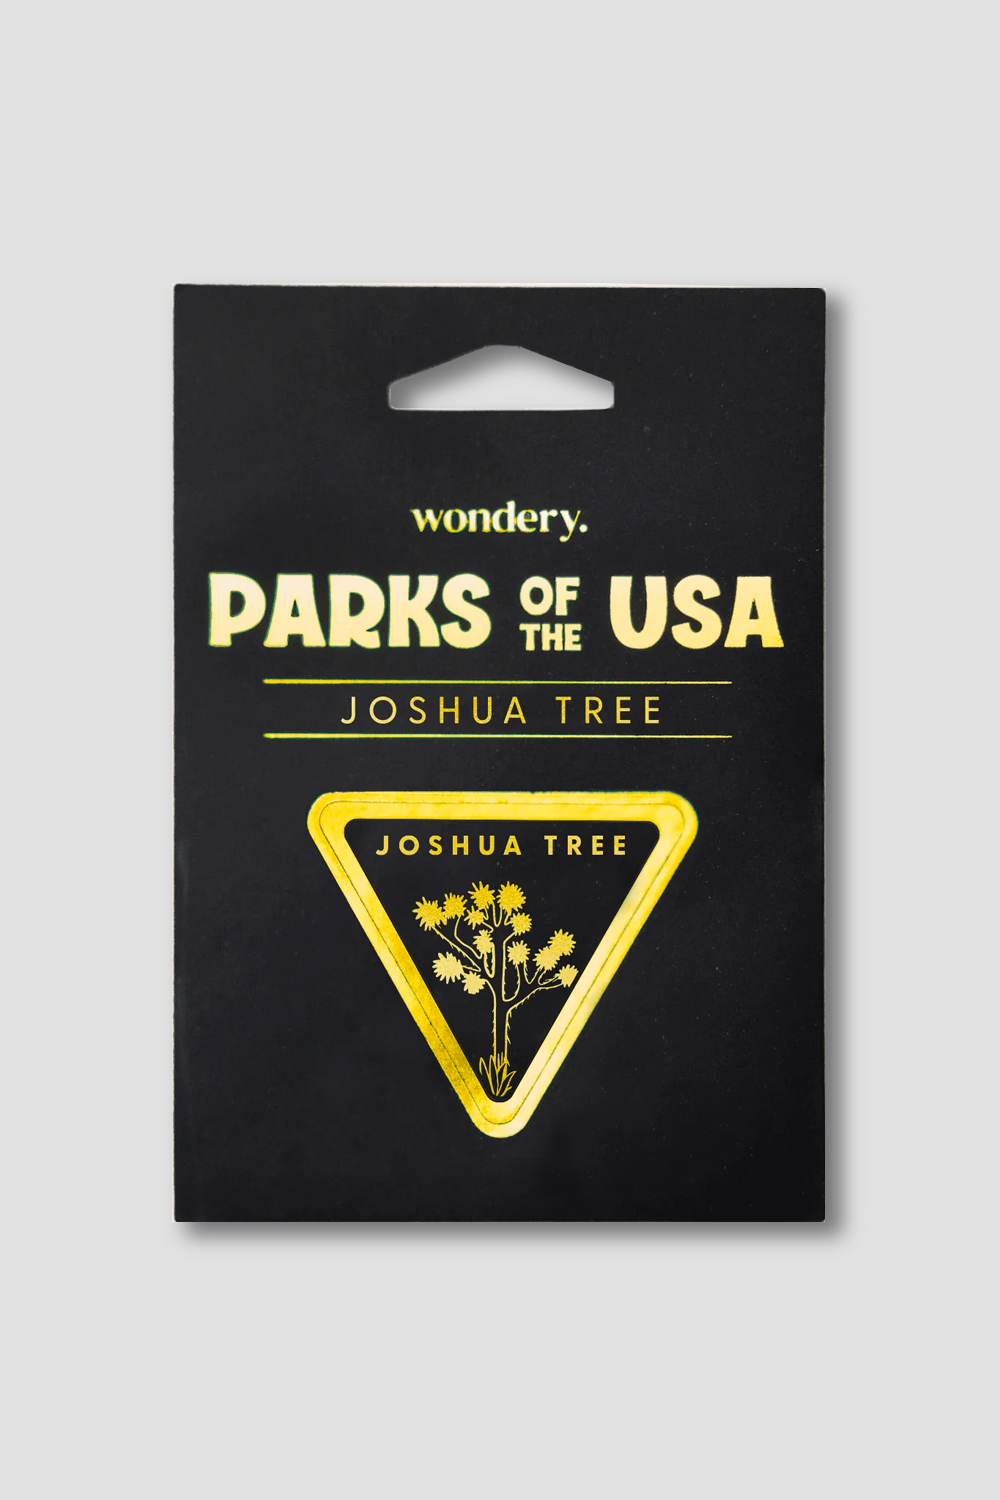 #national park_joshua tree _USA National Park souvenir stickers